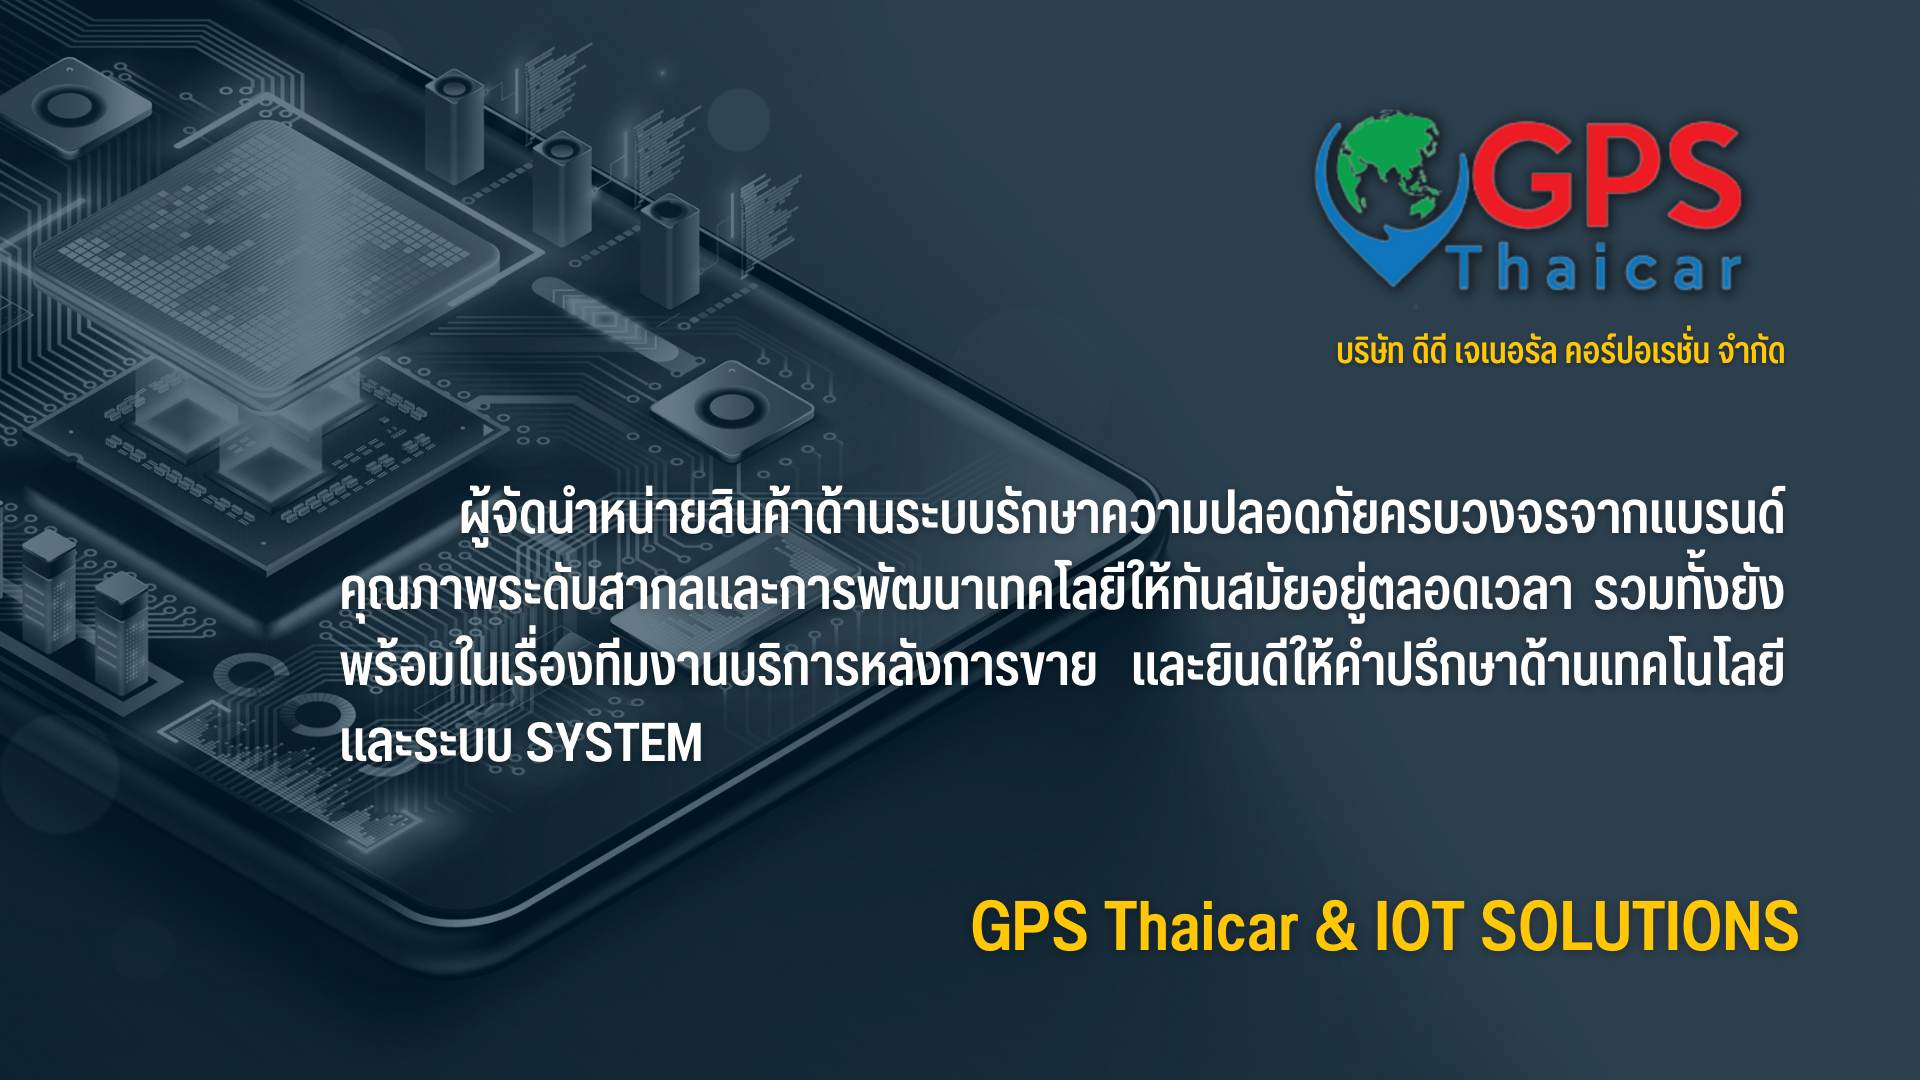 ประวัติและความเป็นมาของบริษัท GPS Thai Car 